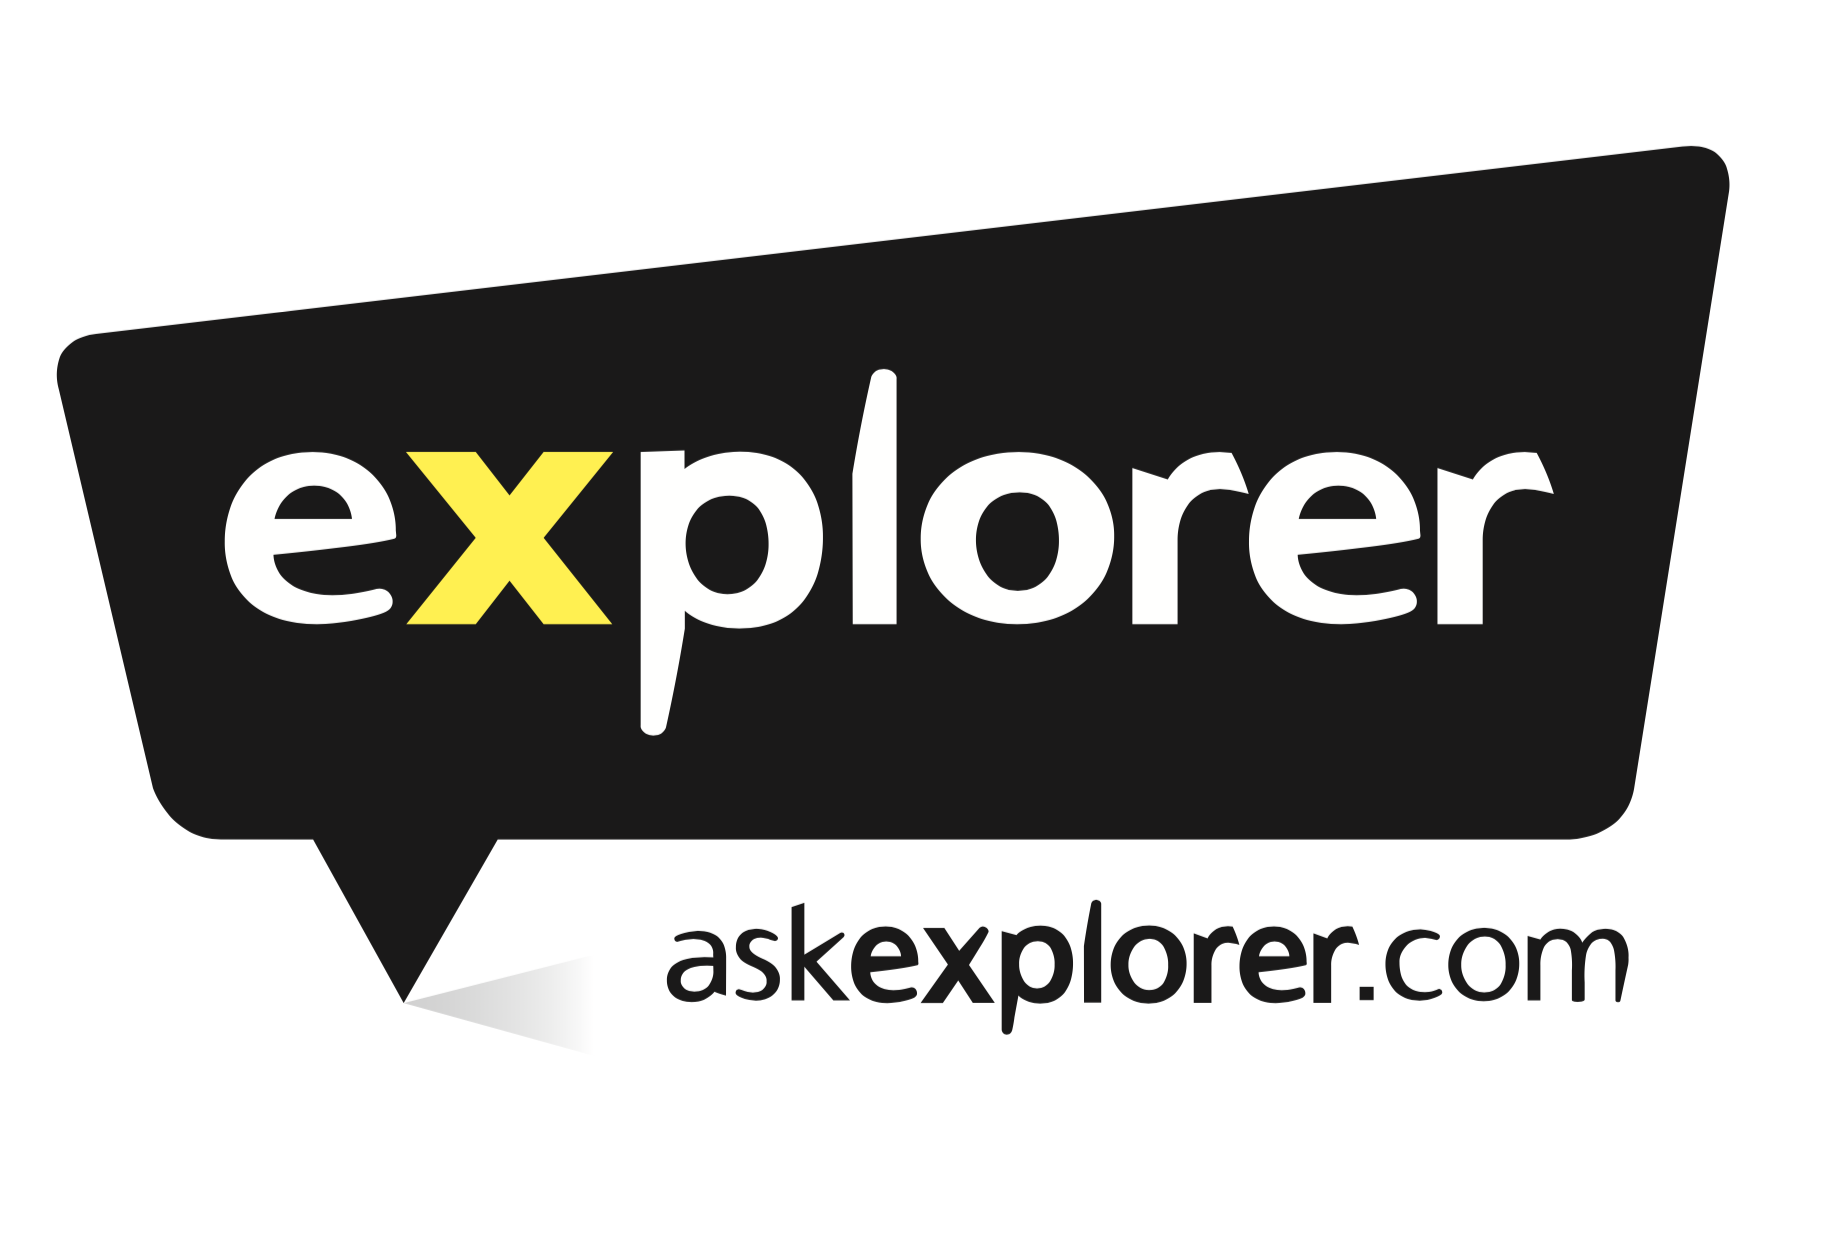 Explorer Publishing & Distribution